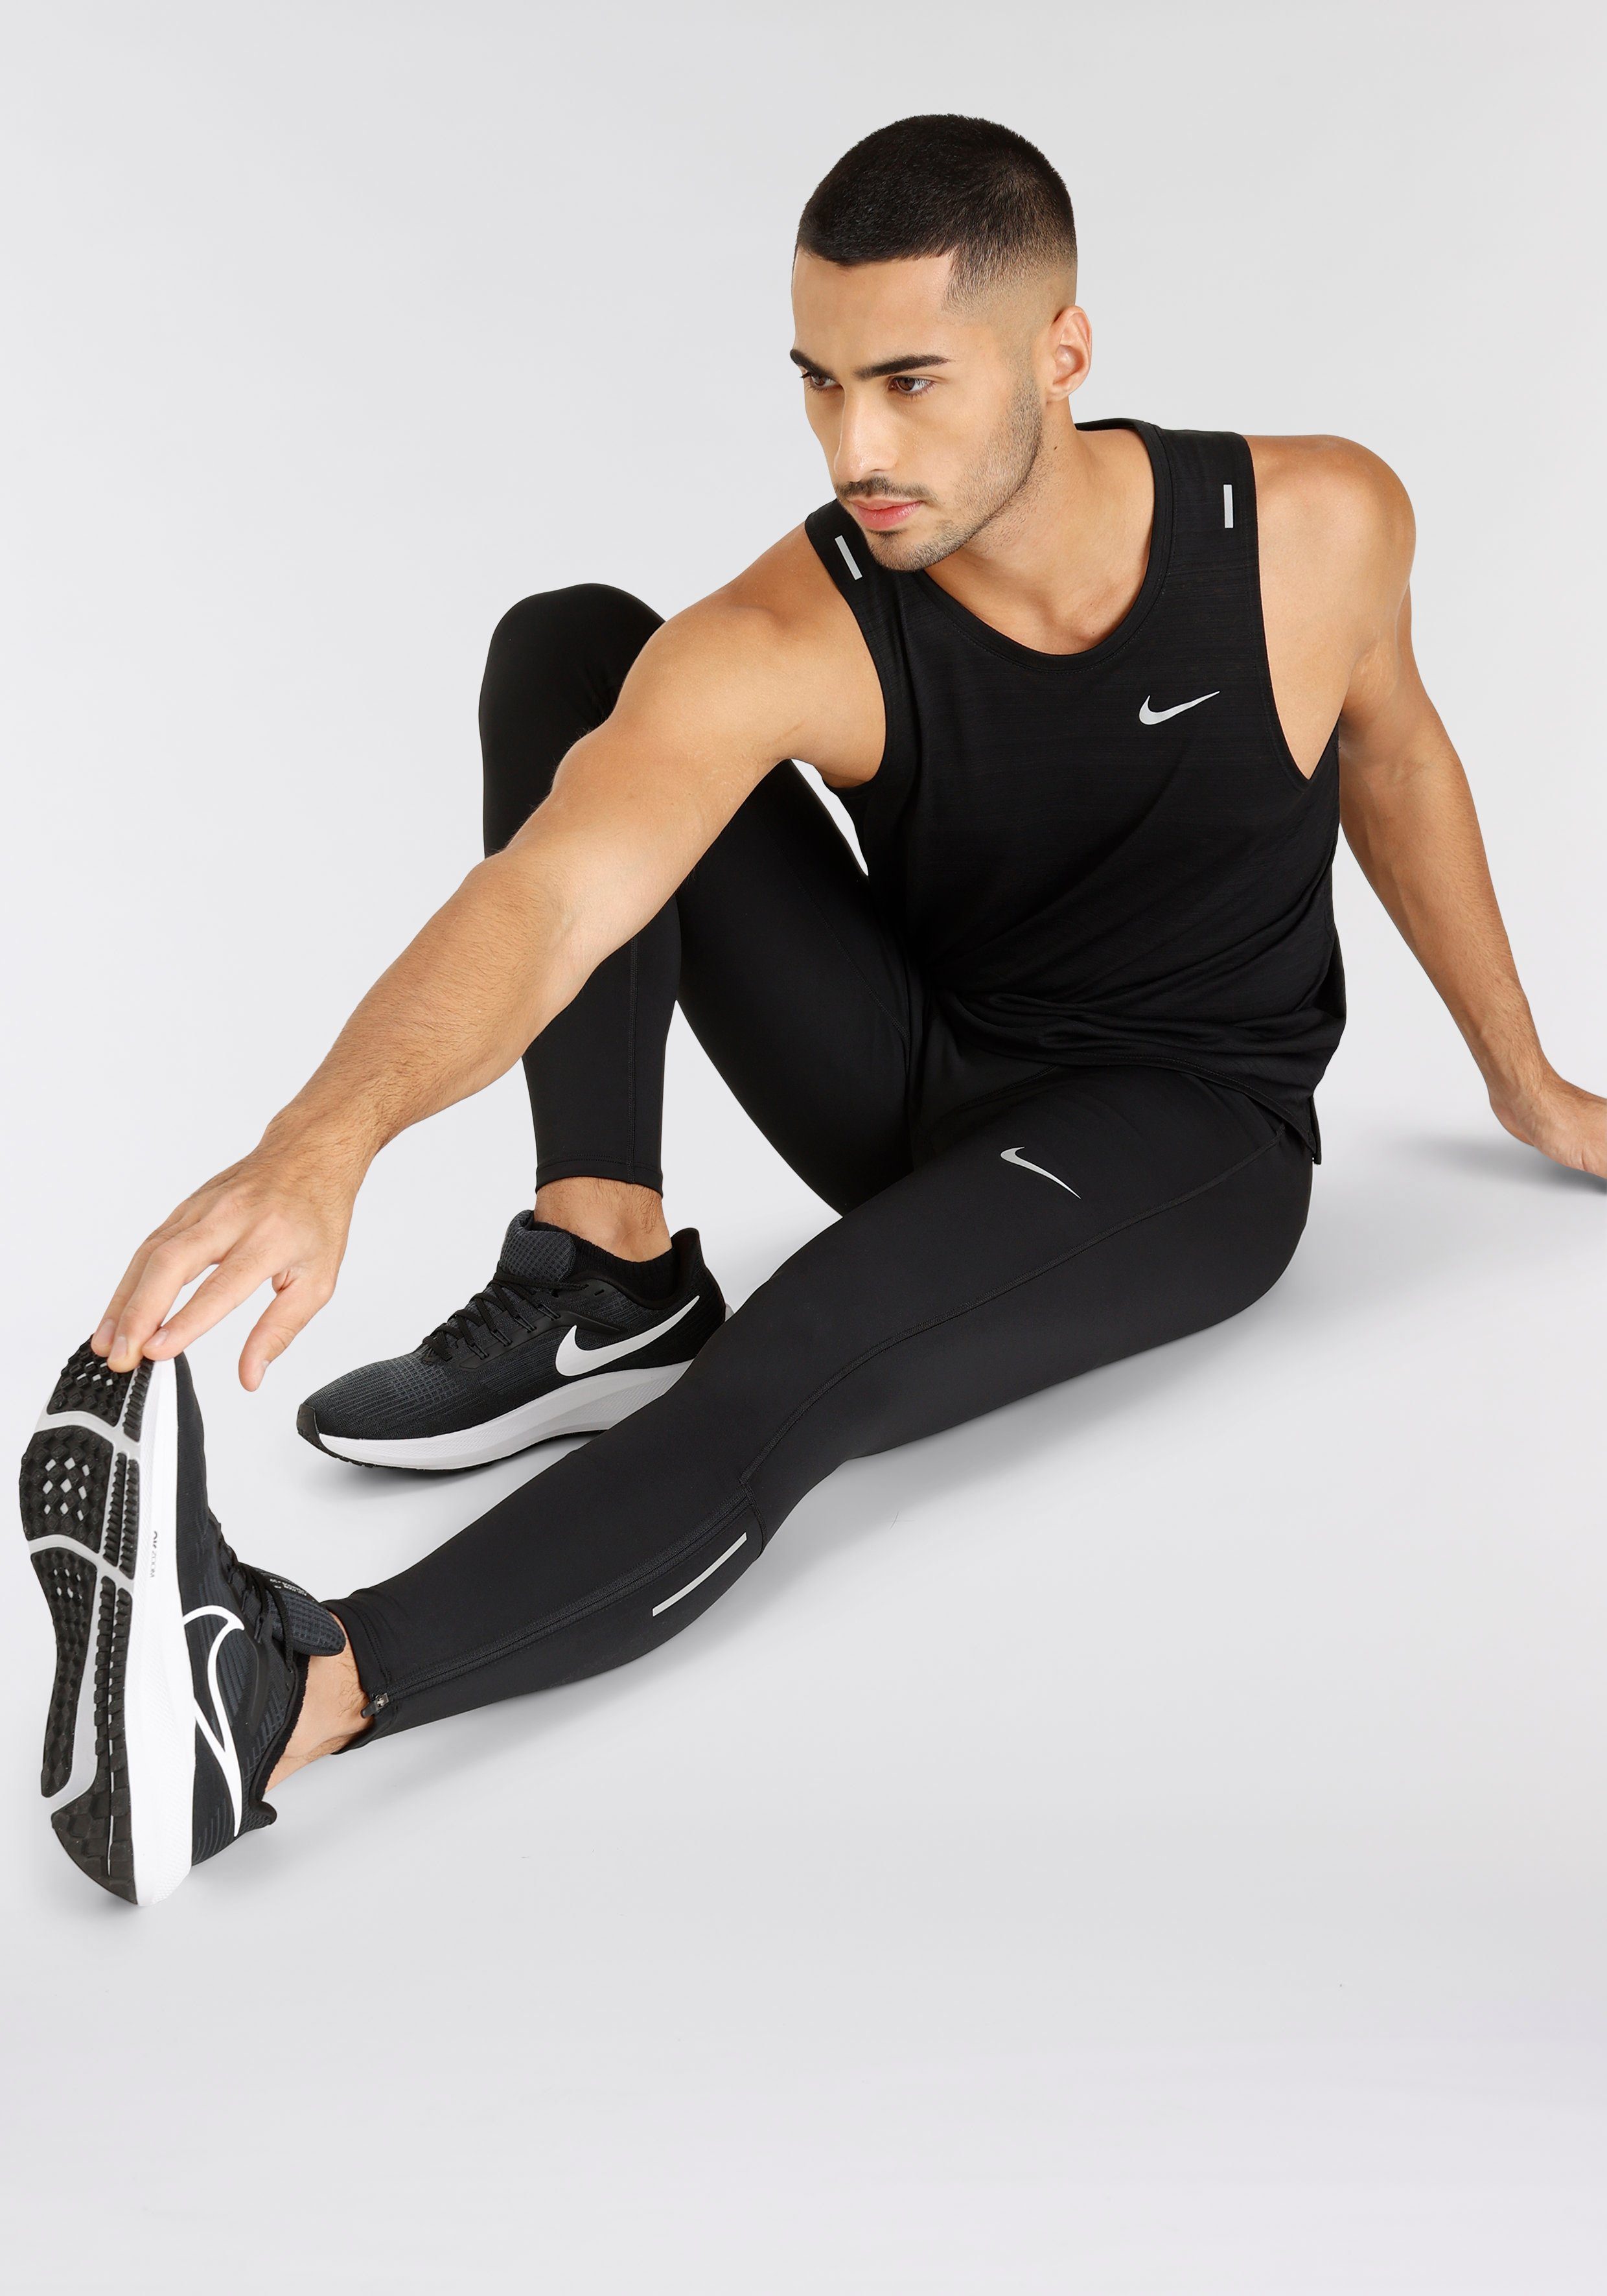 Nike Lauftights Dri-FIT Challenger Men's Running Tights schwarz